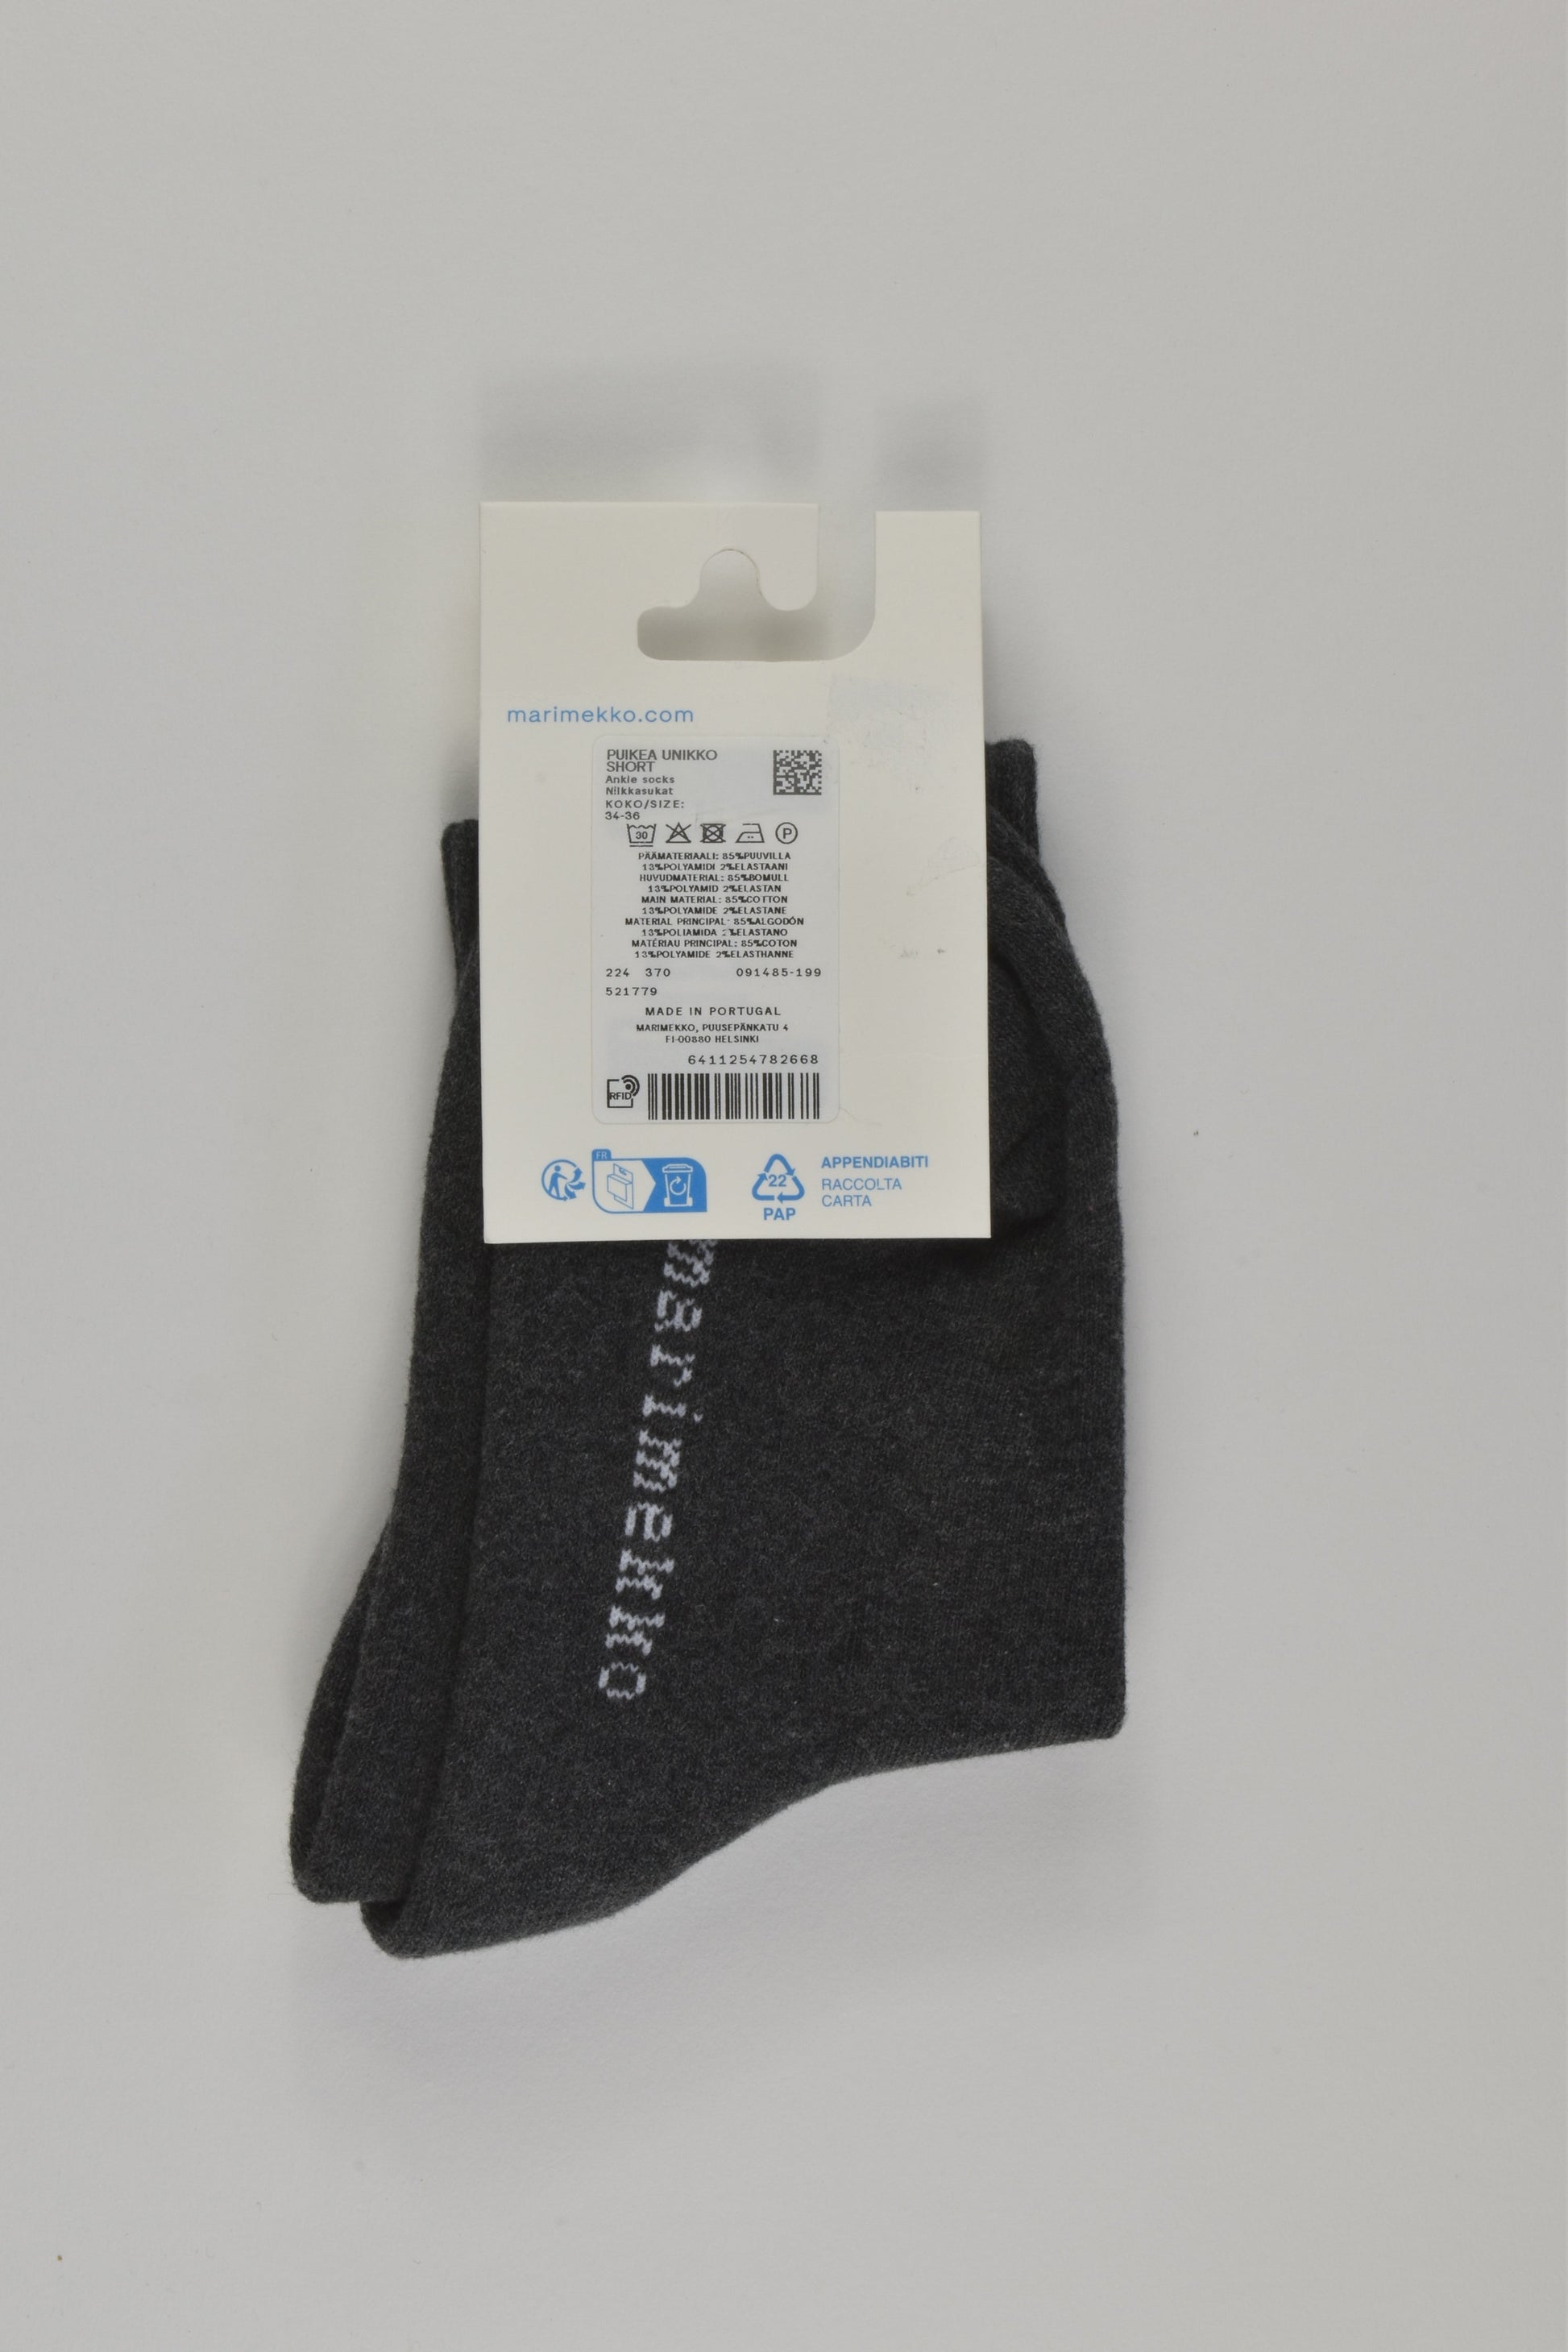 NEW Marimekko Size EUR 34/36 Socks